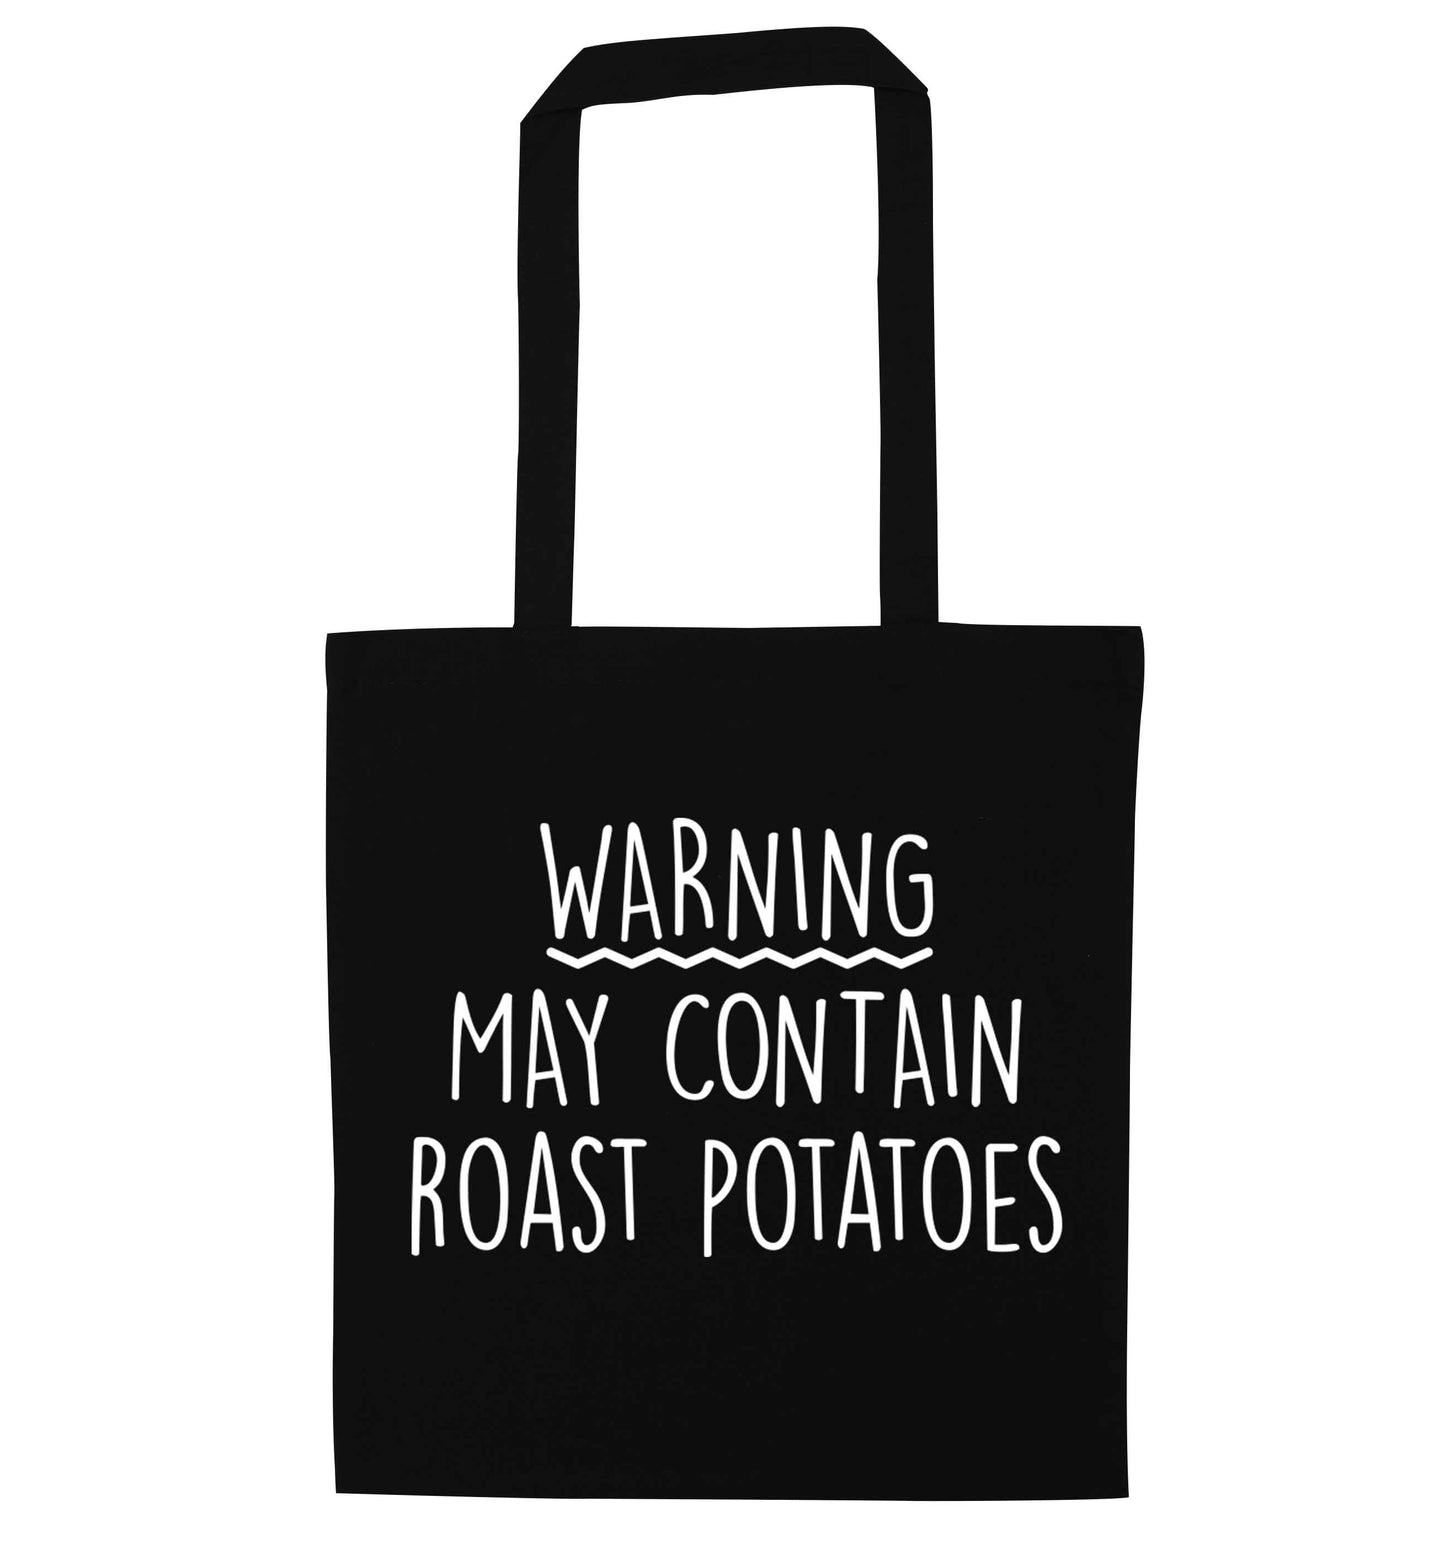 Warning may containg roast potatoes black tote bag